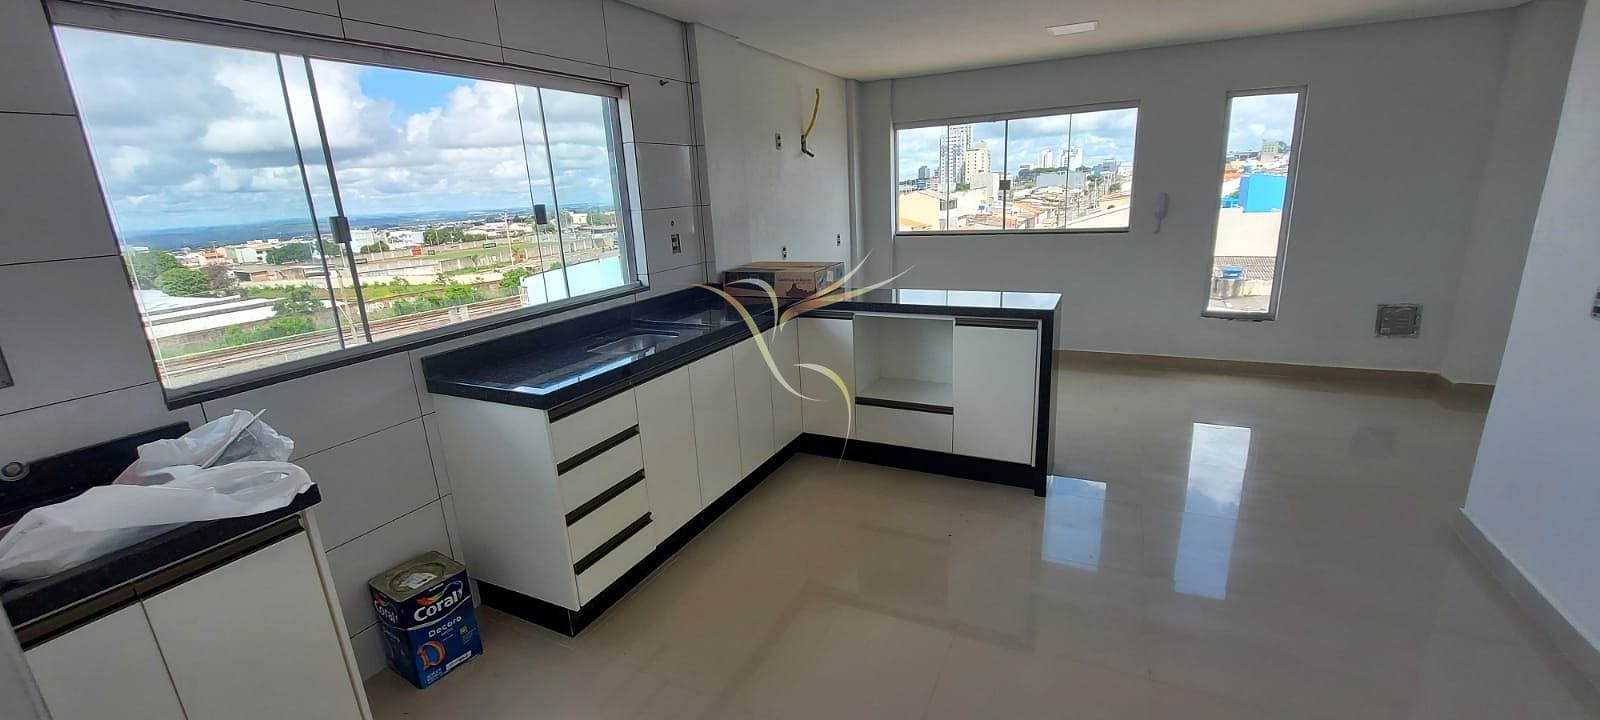 Apartamento em Ceilândia Sul (Ceilândia), Brasília/DF de 50m² 2 quartos à venda por R$ 164.000,00